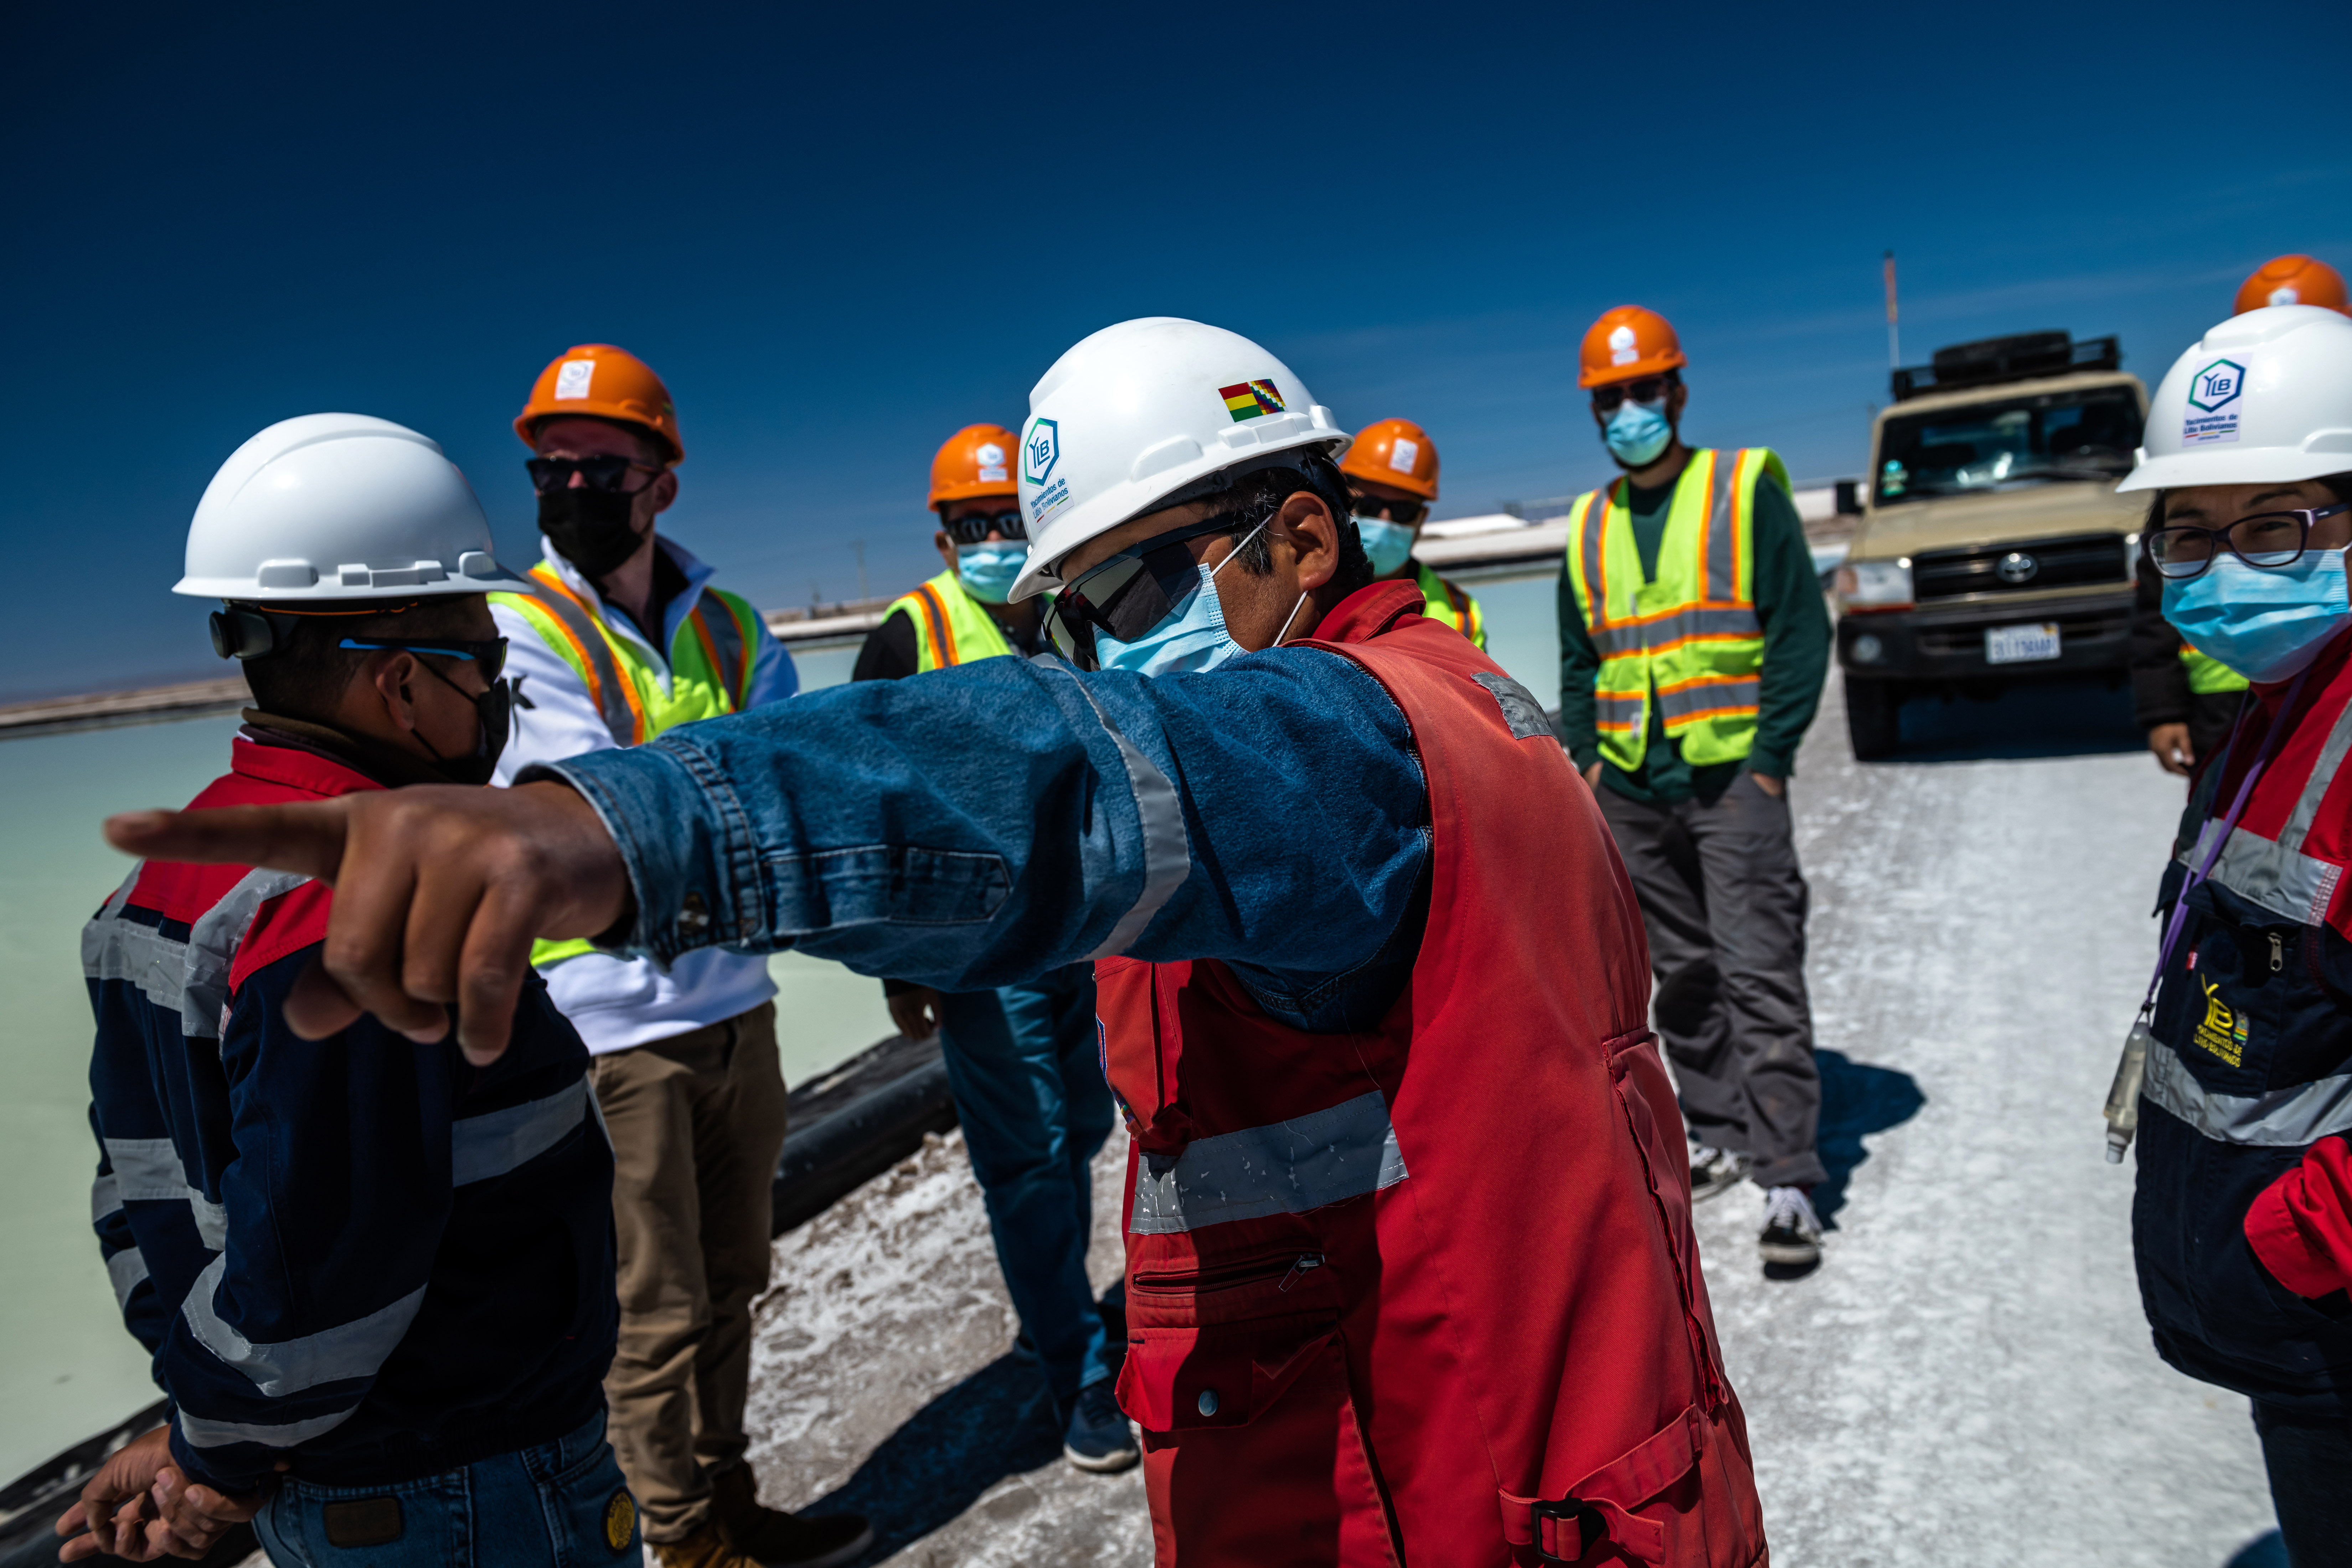 Equipo de la empresa con sede en Texas EnergyX es conducido en un recorrido por las salinas en Salad de Uyuni por trabajadores de la compañía estatal de litio el 2 de septiembre de 2021. Bolivia tiene una cuarta parte del litio conocido en el mundo. (Foto Prensa Libre: Meridith Kohut / The New York Times)